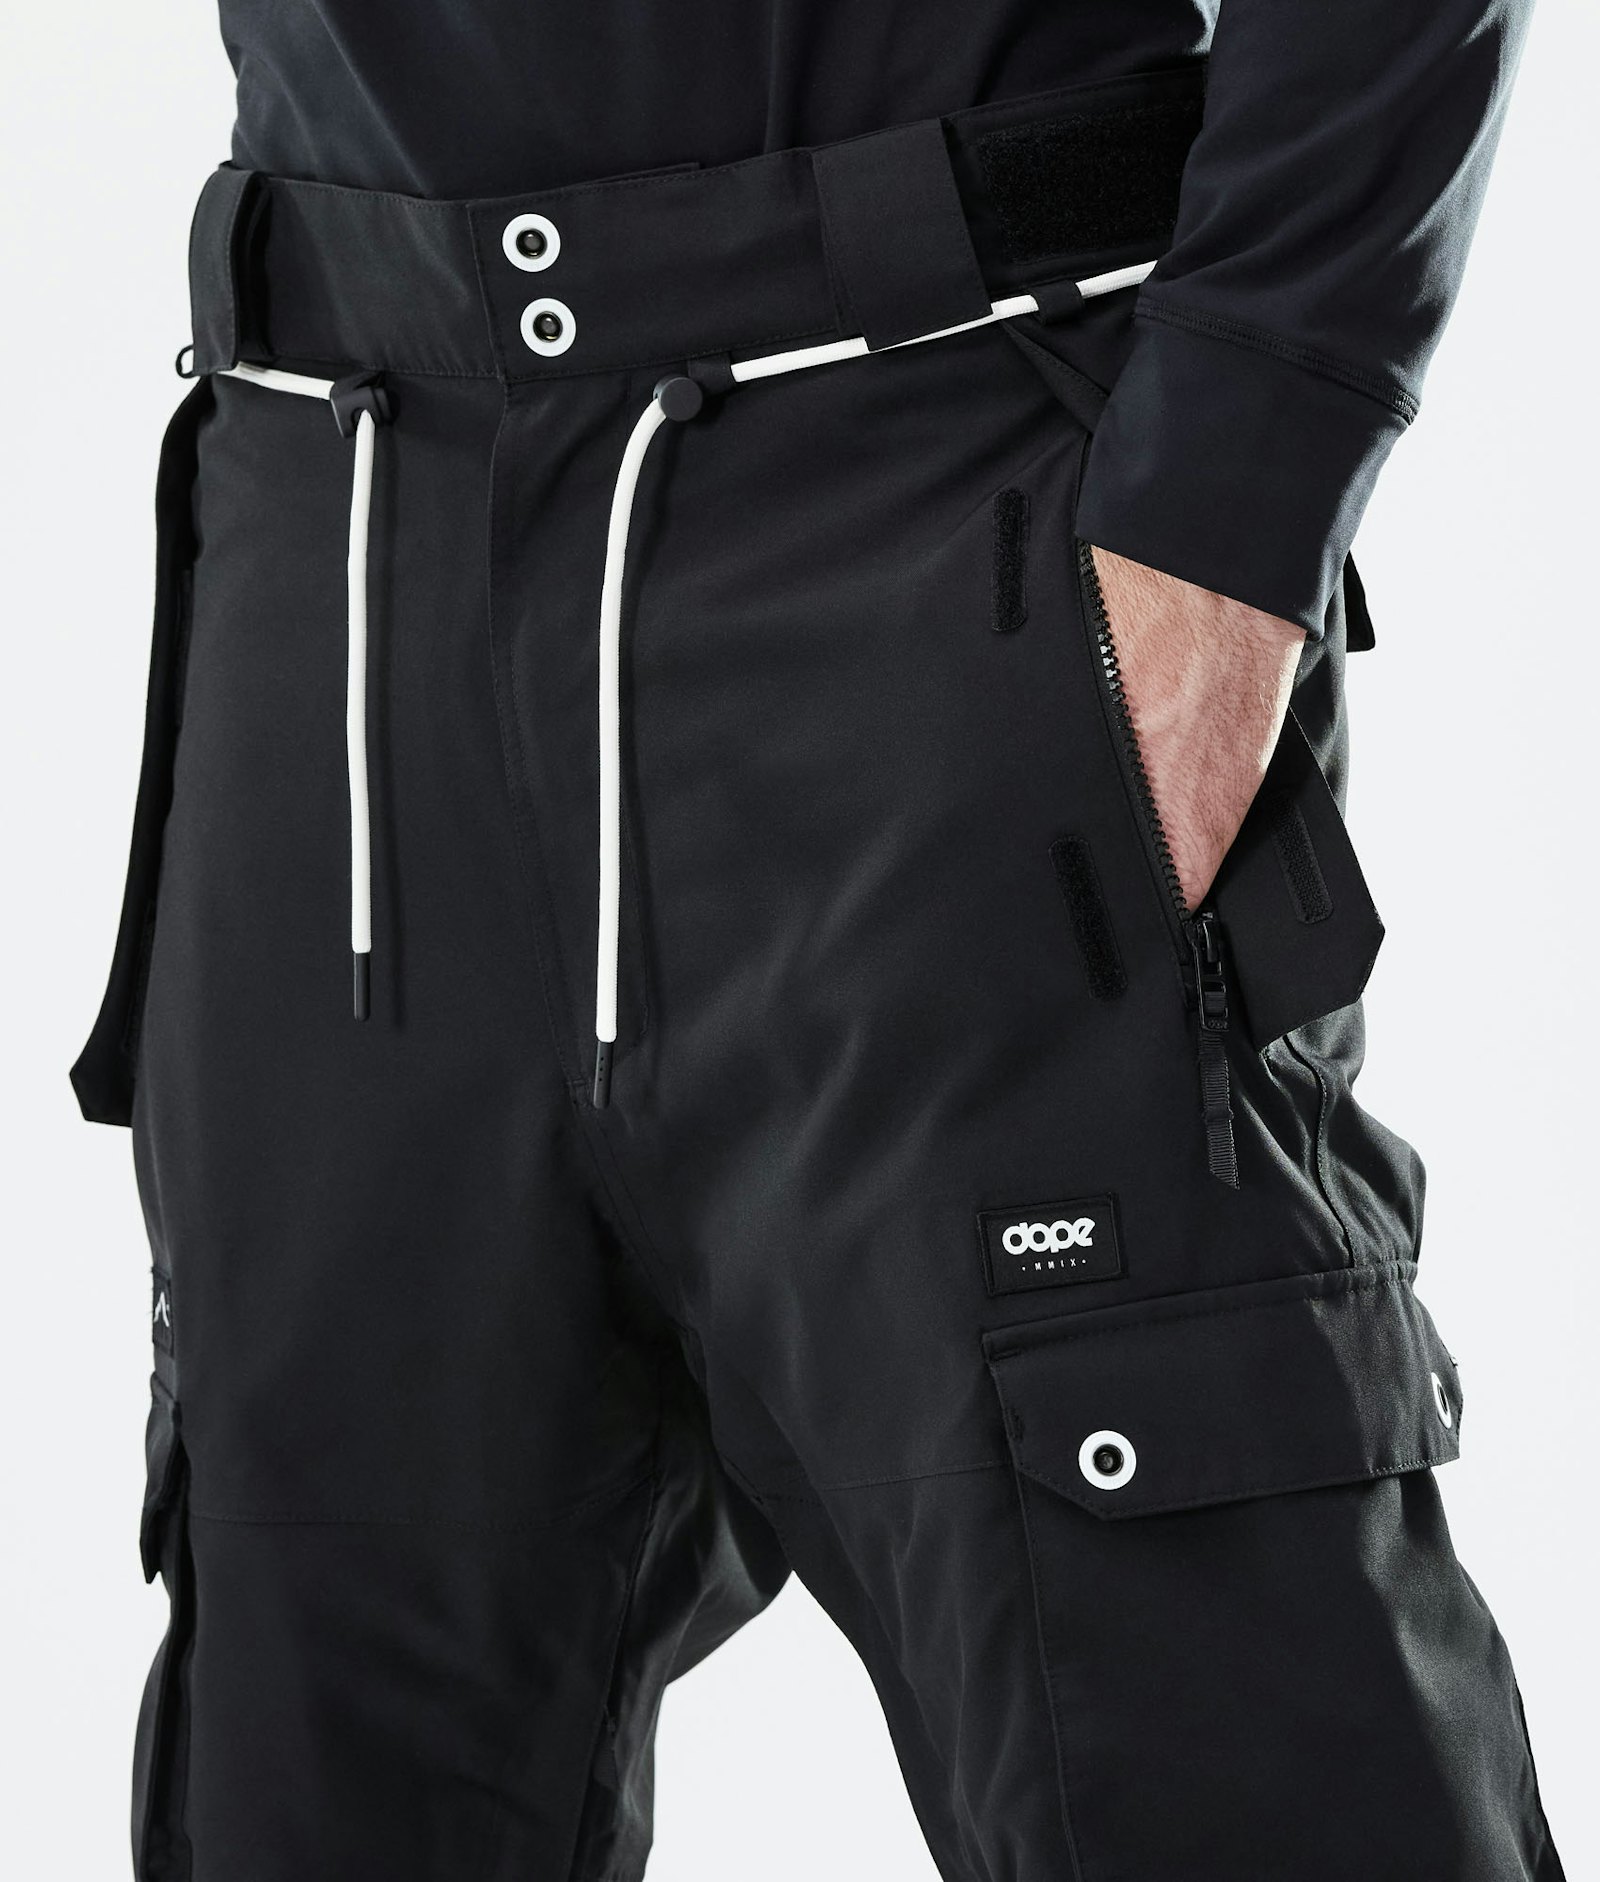 Dope Iconic 2021 Pantalon de Ski Homme Black